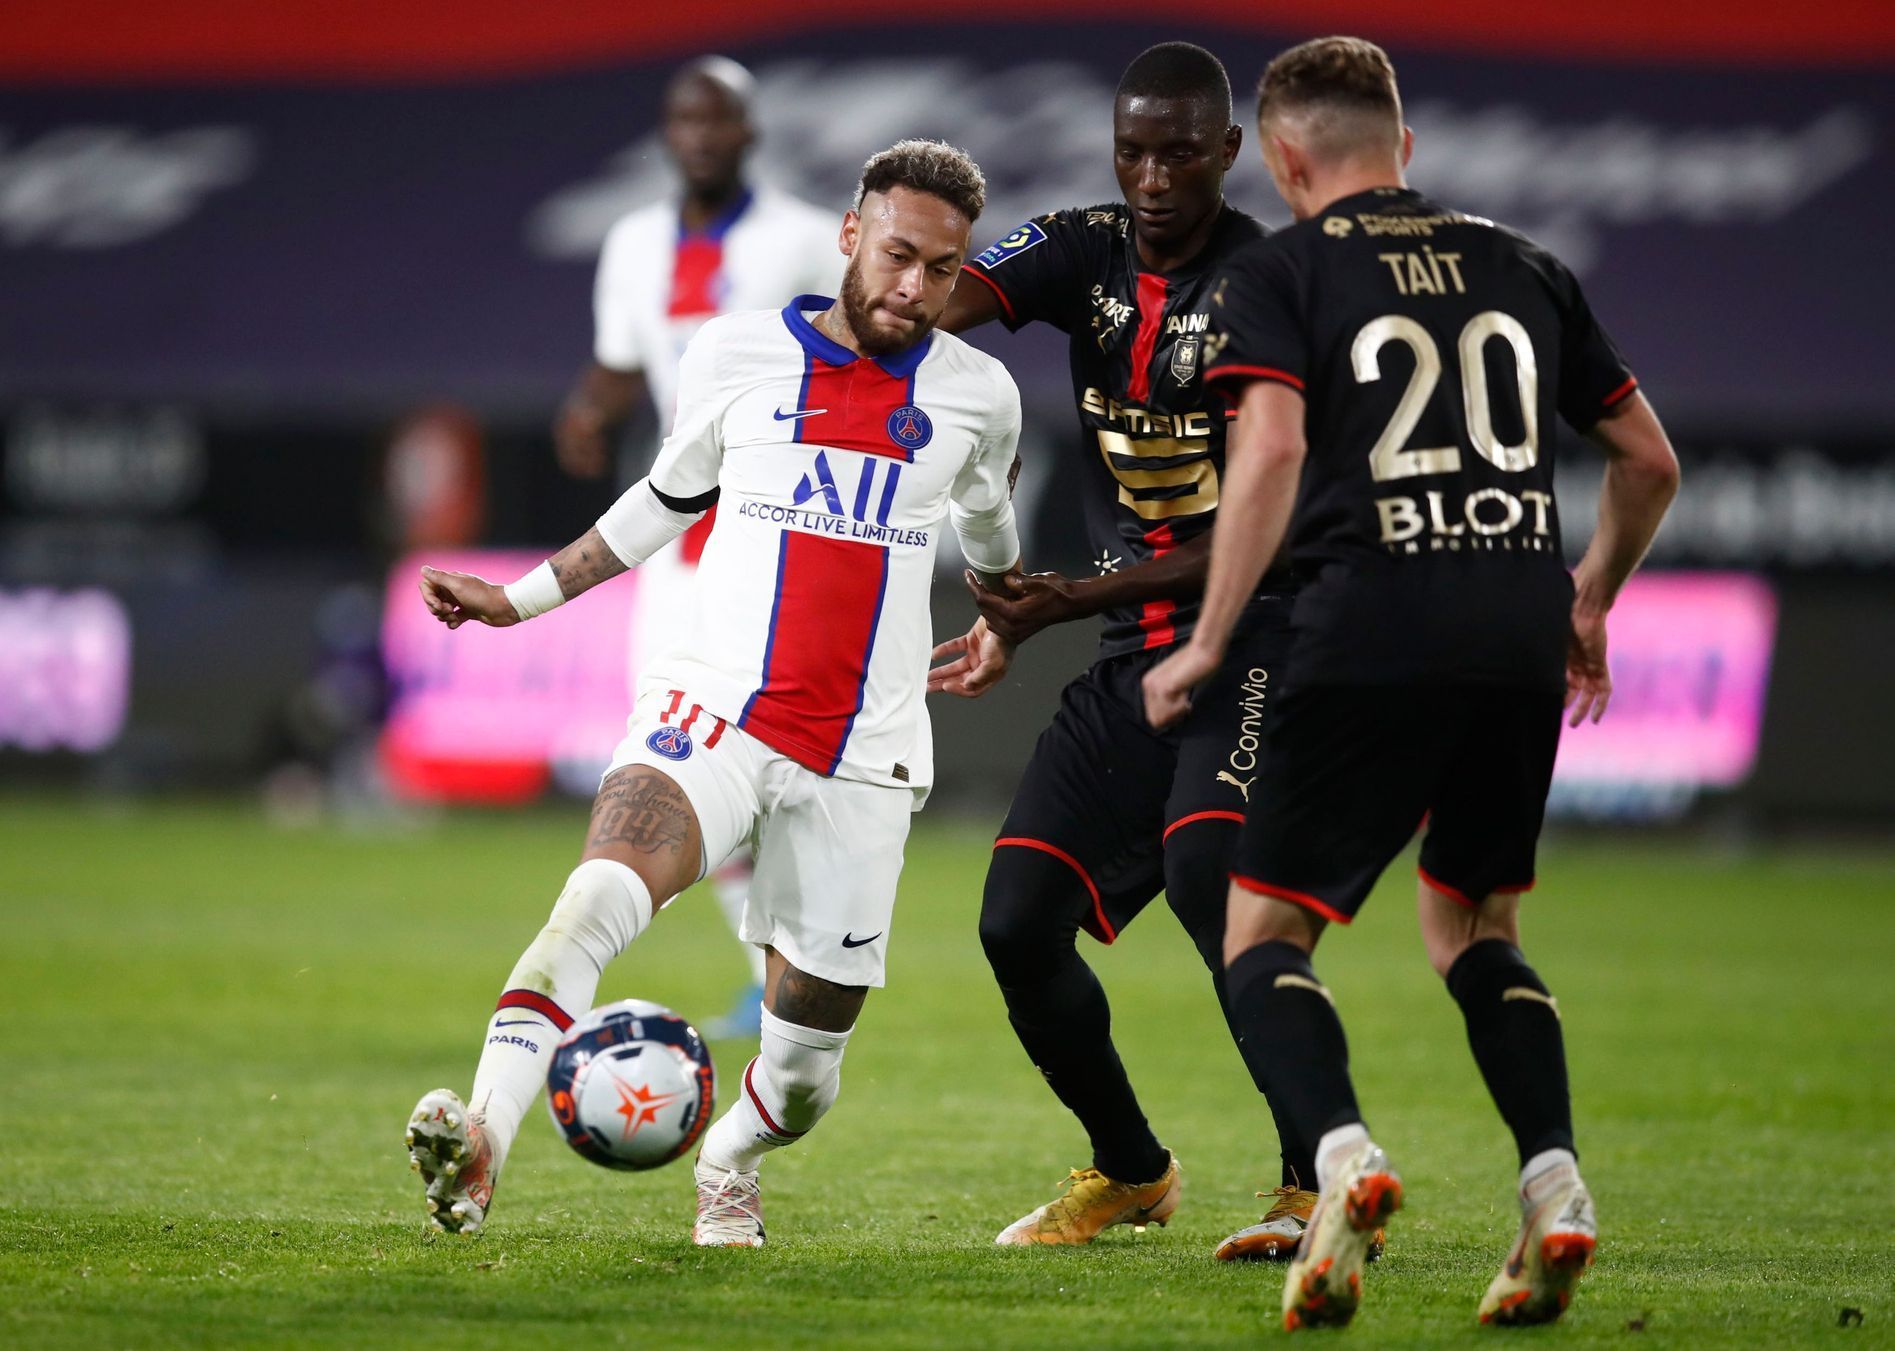 36. kolo francouzské fotbalové ligy 2020/21, Rennes - PSG: Neymar proti obraně domácích